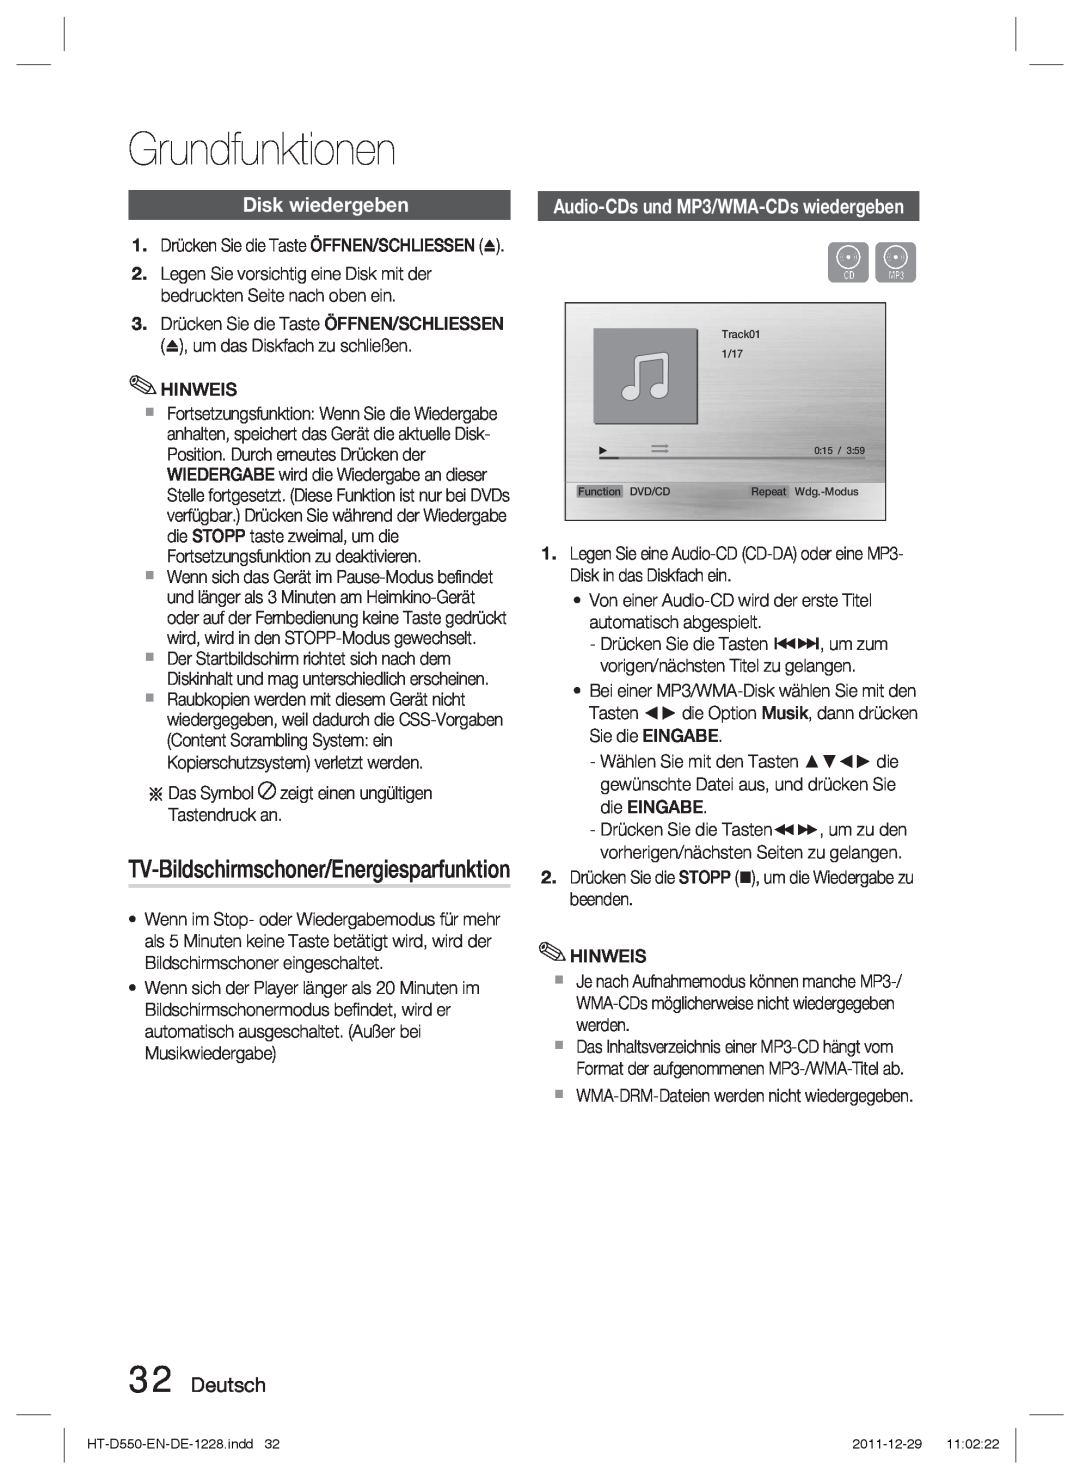 Samsung HT-D550/XN, HT-D555/TK manual Grundfunktionen, Disk wiedergeben, TV-Bildschirmschoner/Energiesparfunktion, Deutsch 